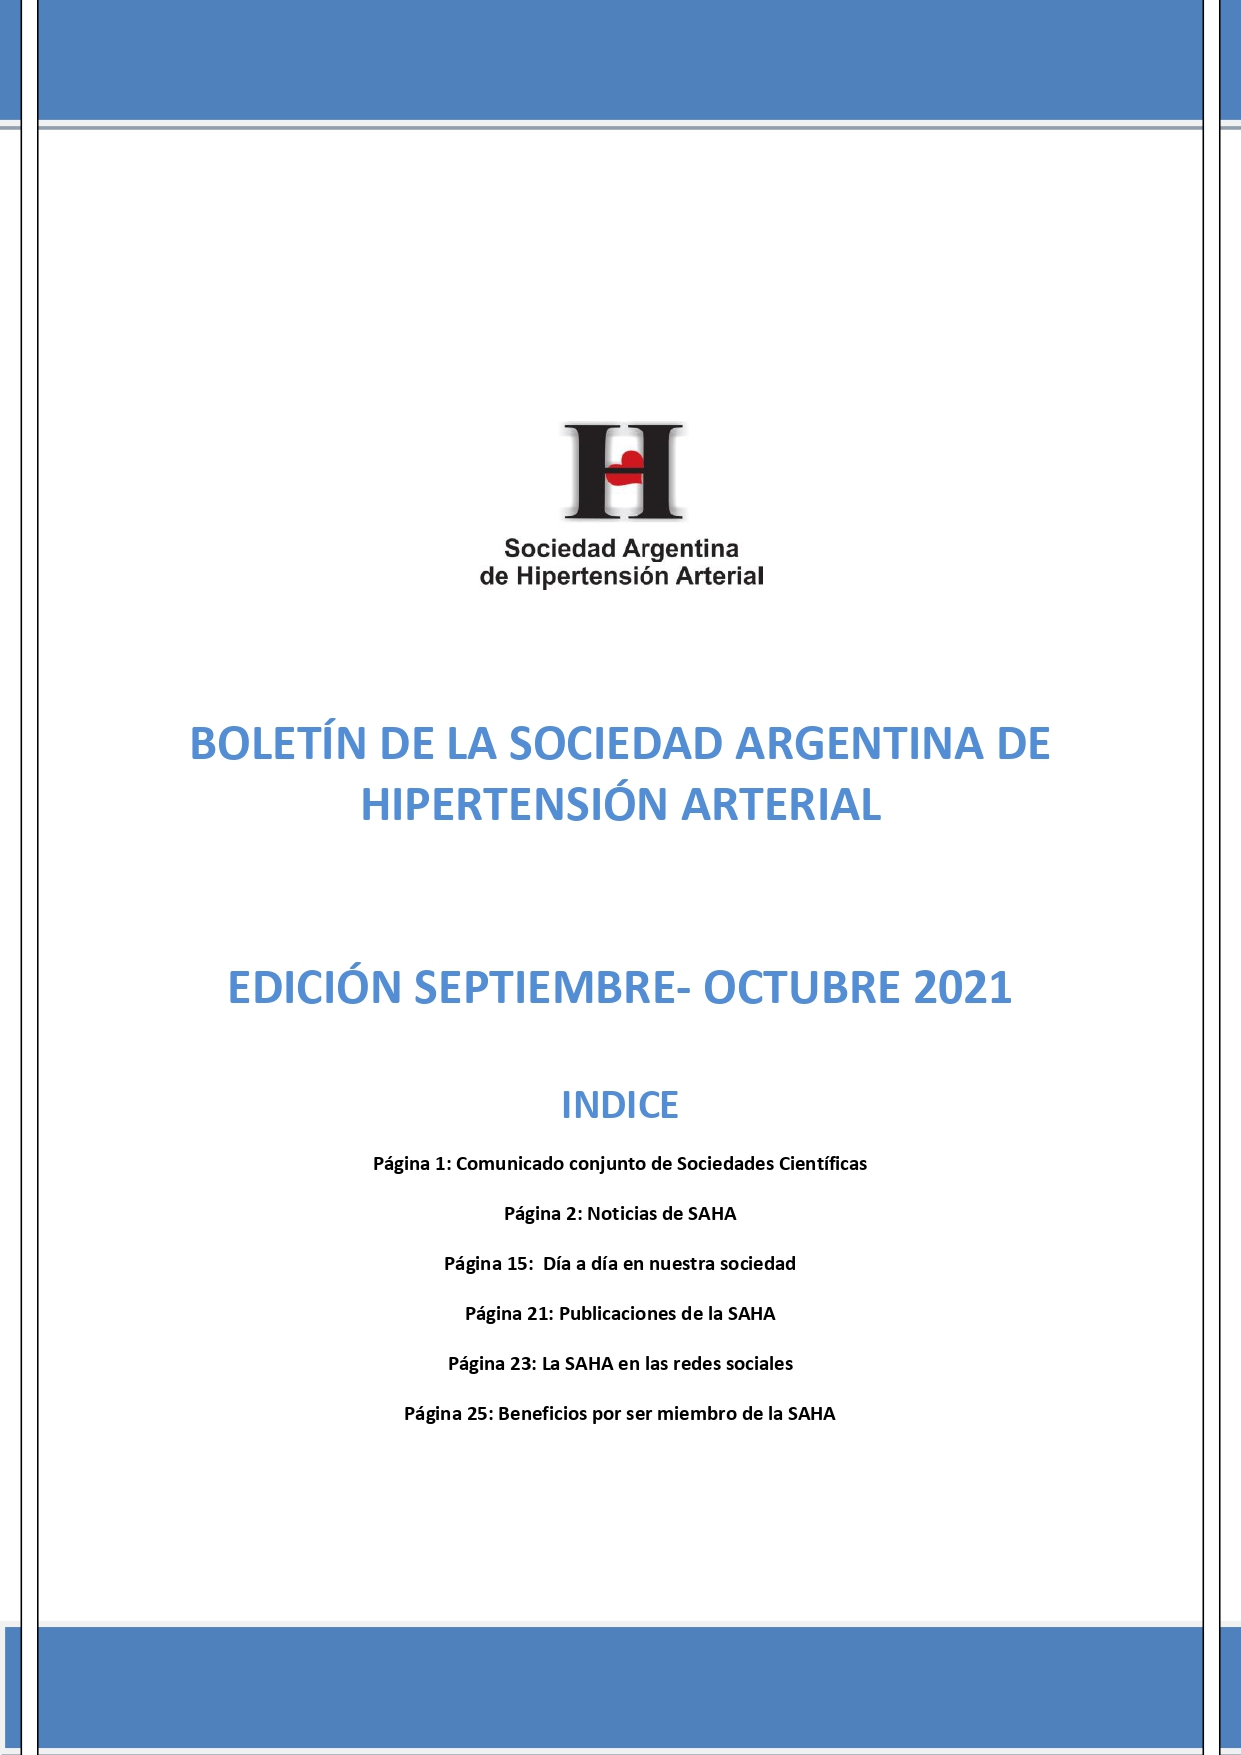 Boletín Periódico Sociedad Argentina de Hipertensión Arterial Septiembre - Octubre 2021